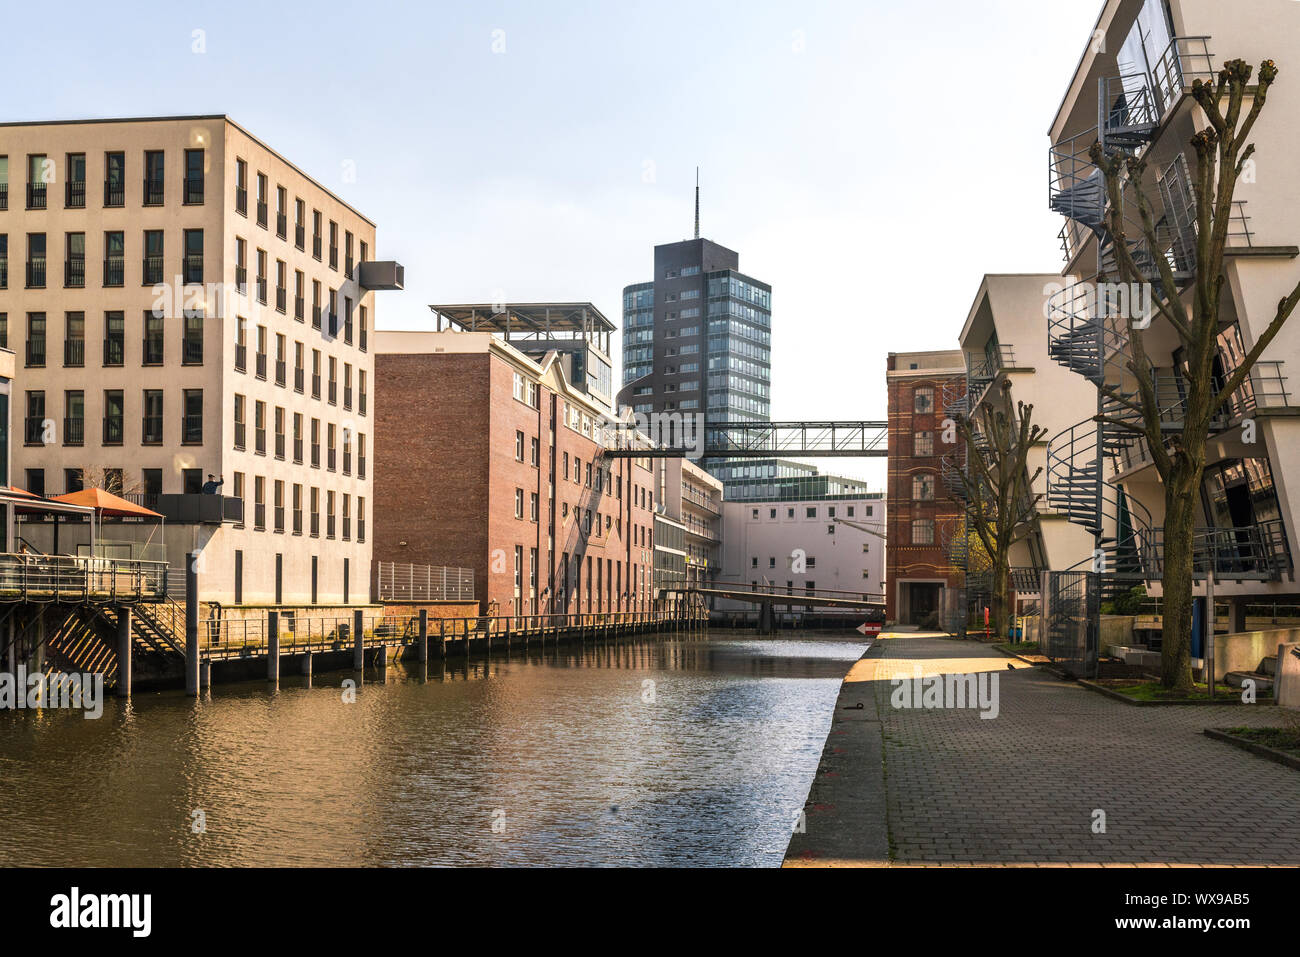 Vía navegable en el puerto interior del distrito de Hamburgo Harburg Foto de stock